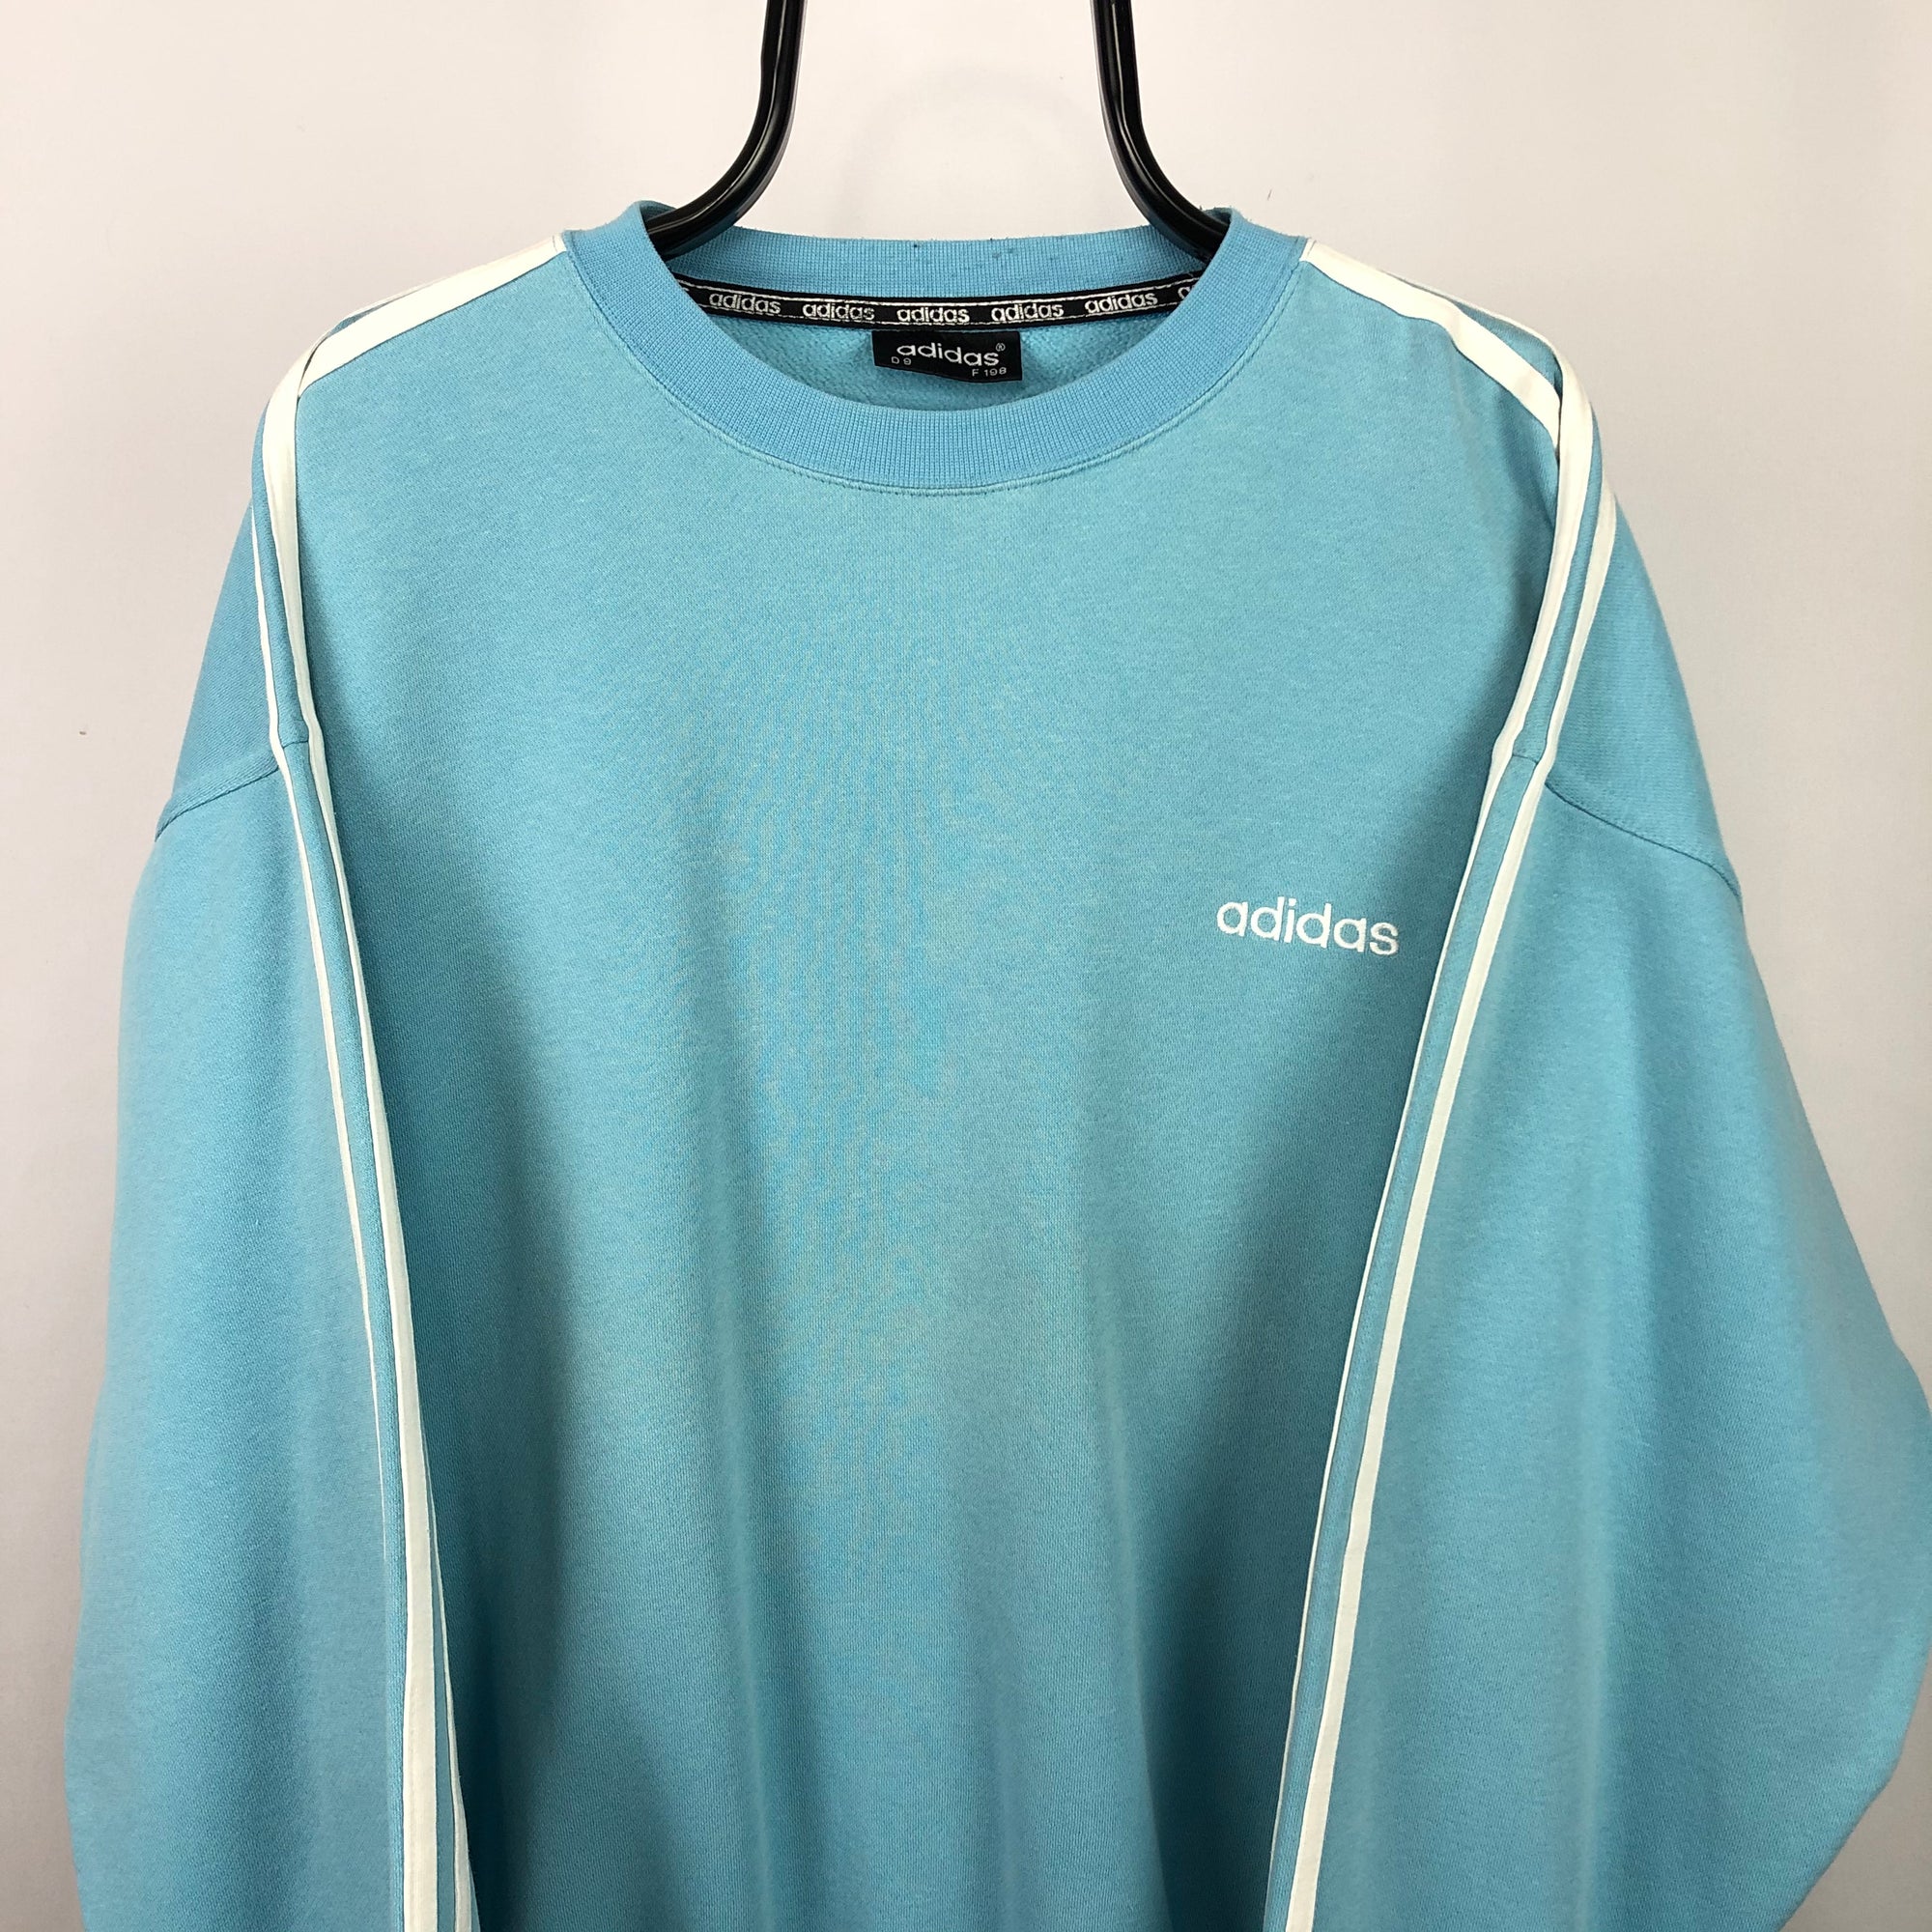 Vintage 90s Adidas Sweatshirt in Baby Blue/White - Men's XL/Women's XXL